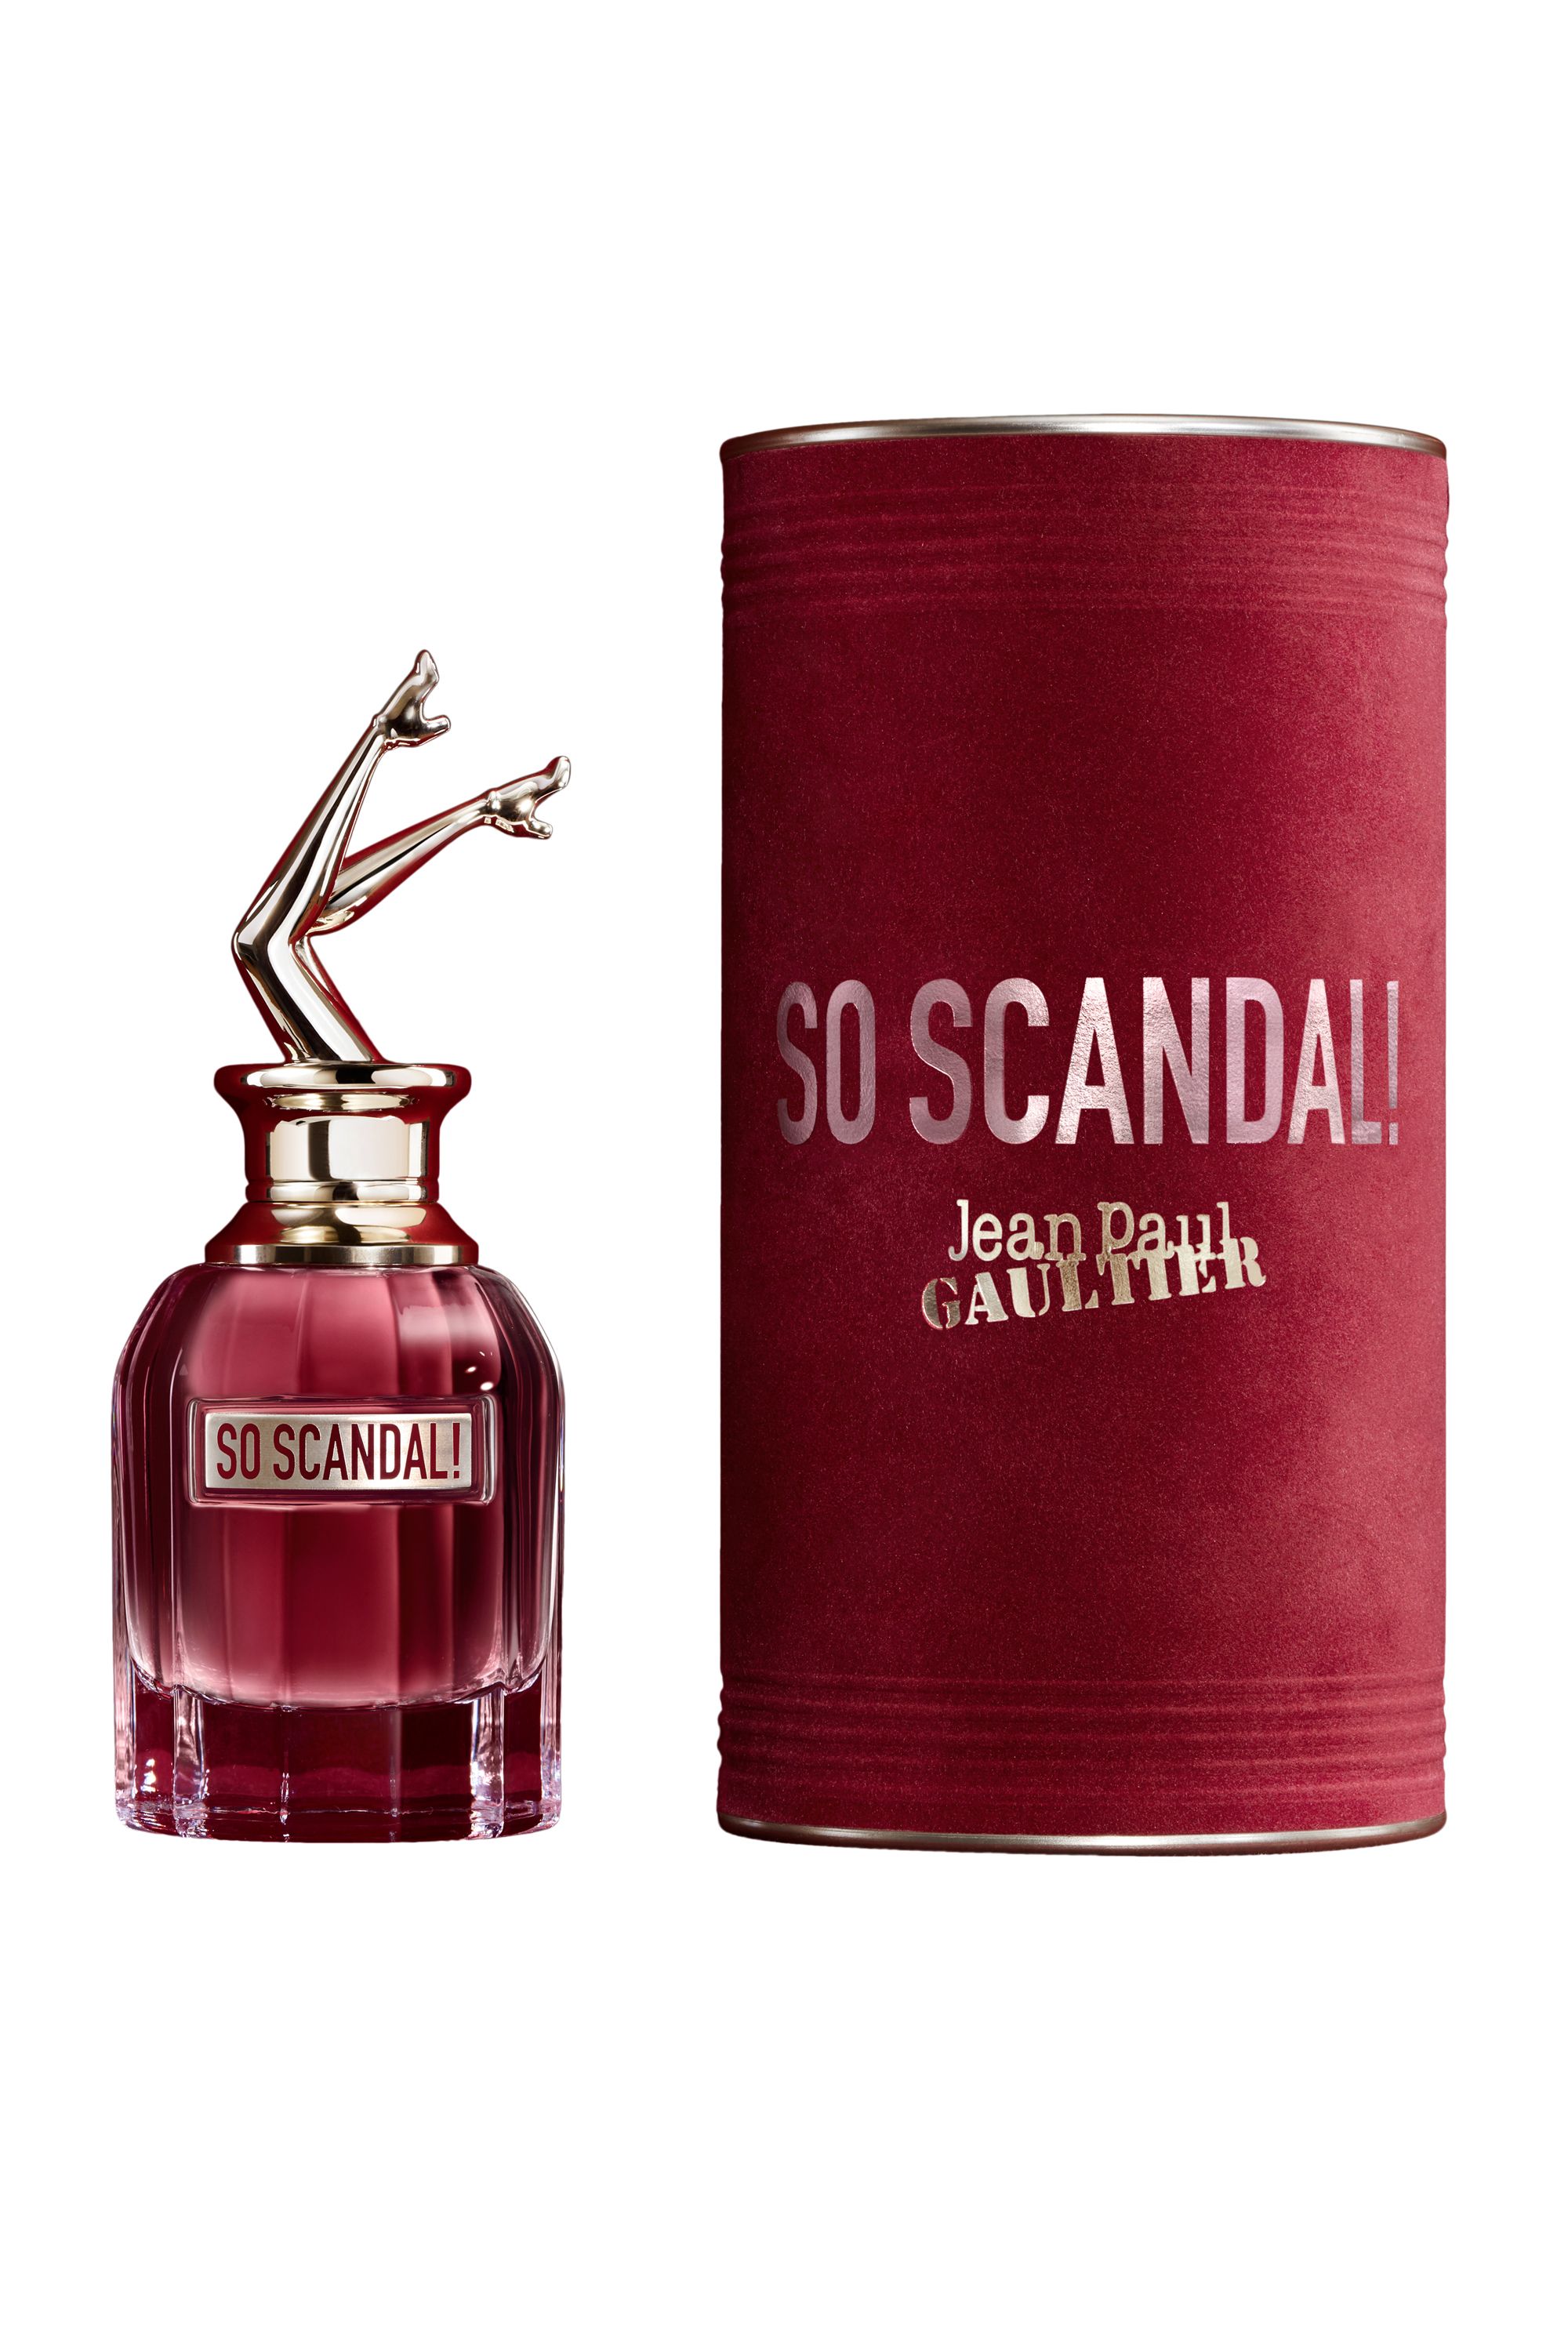 Jean Paul Gaultier - Eau de parfum So Scandal! - Blissim